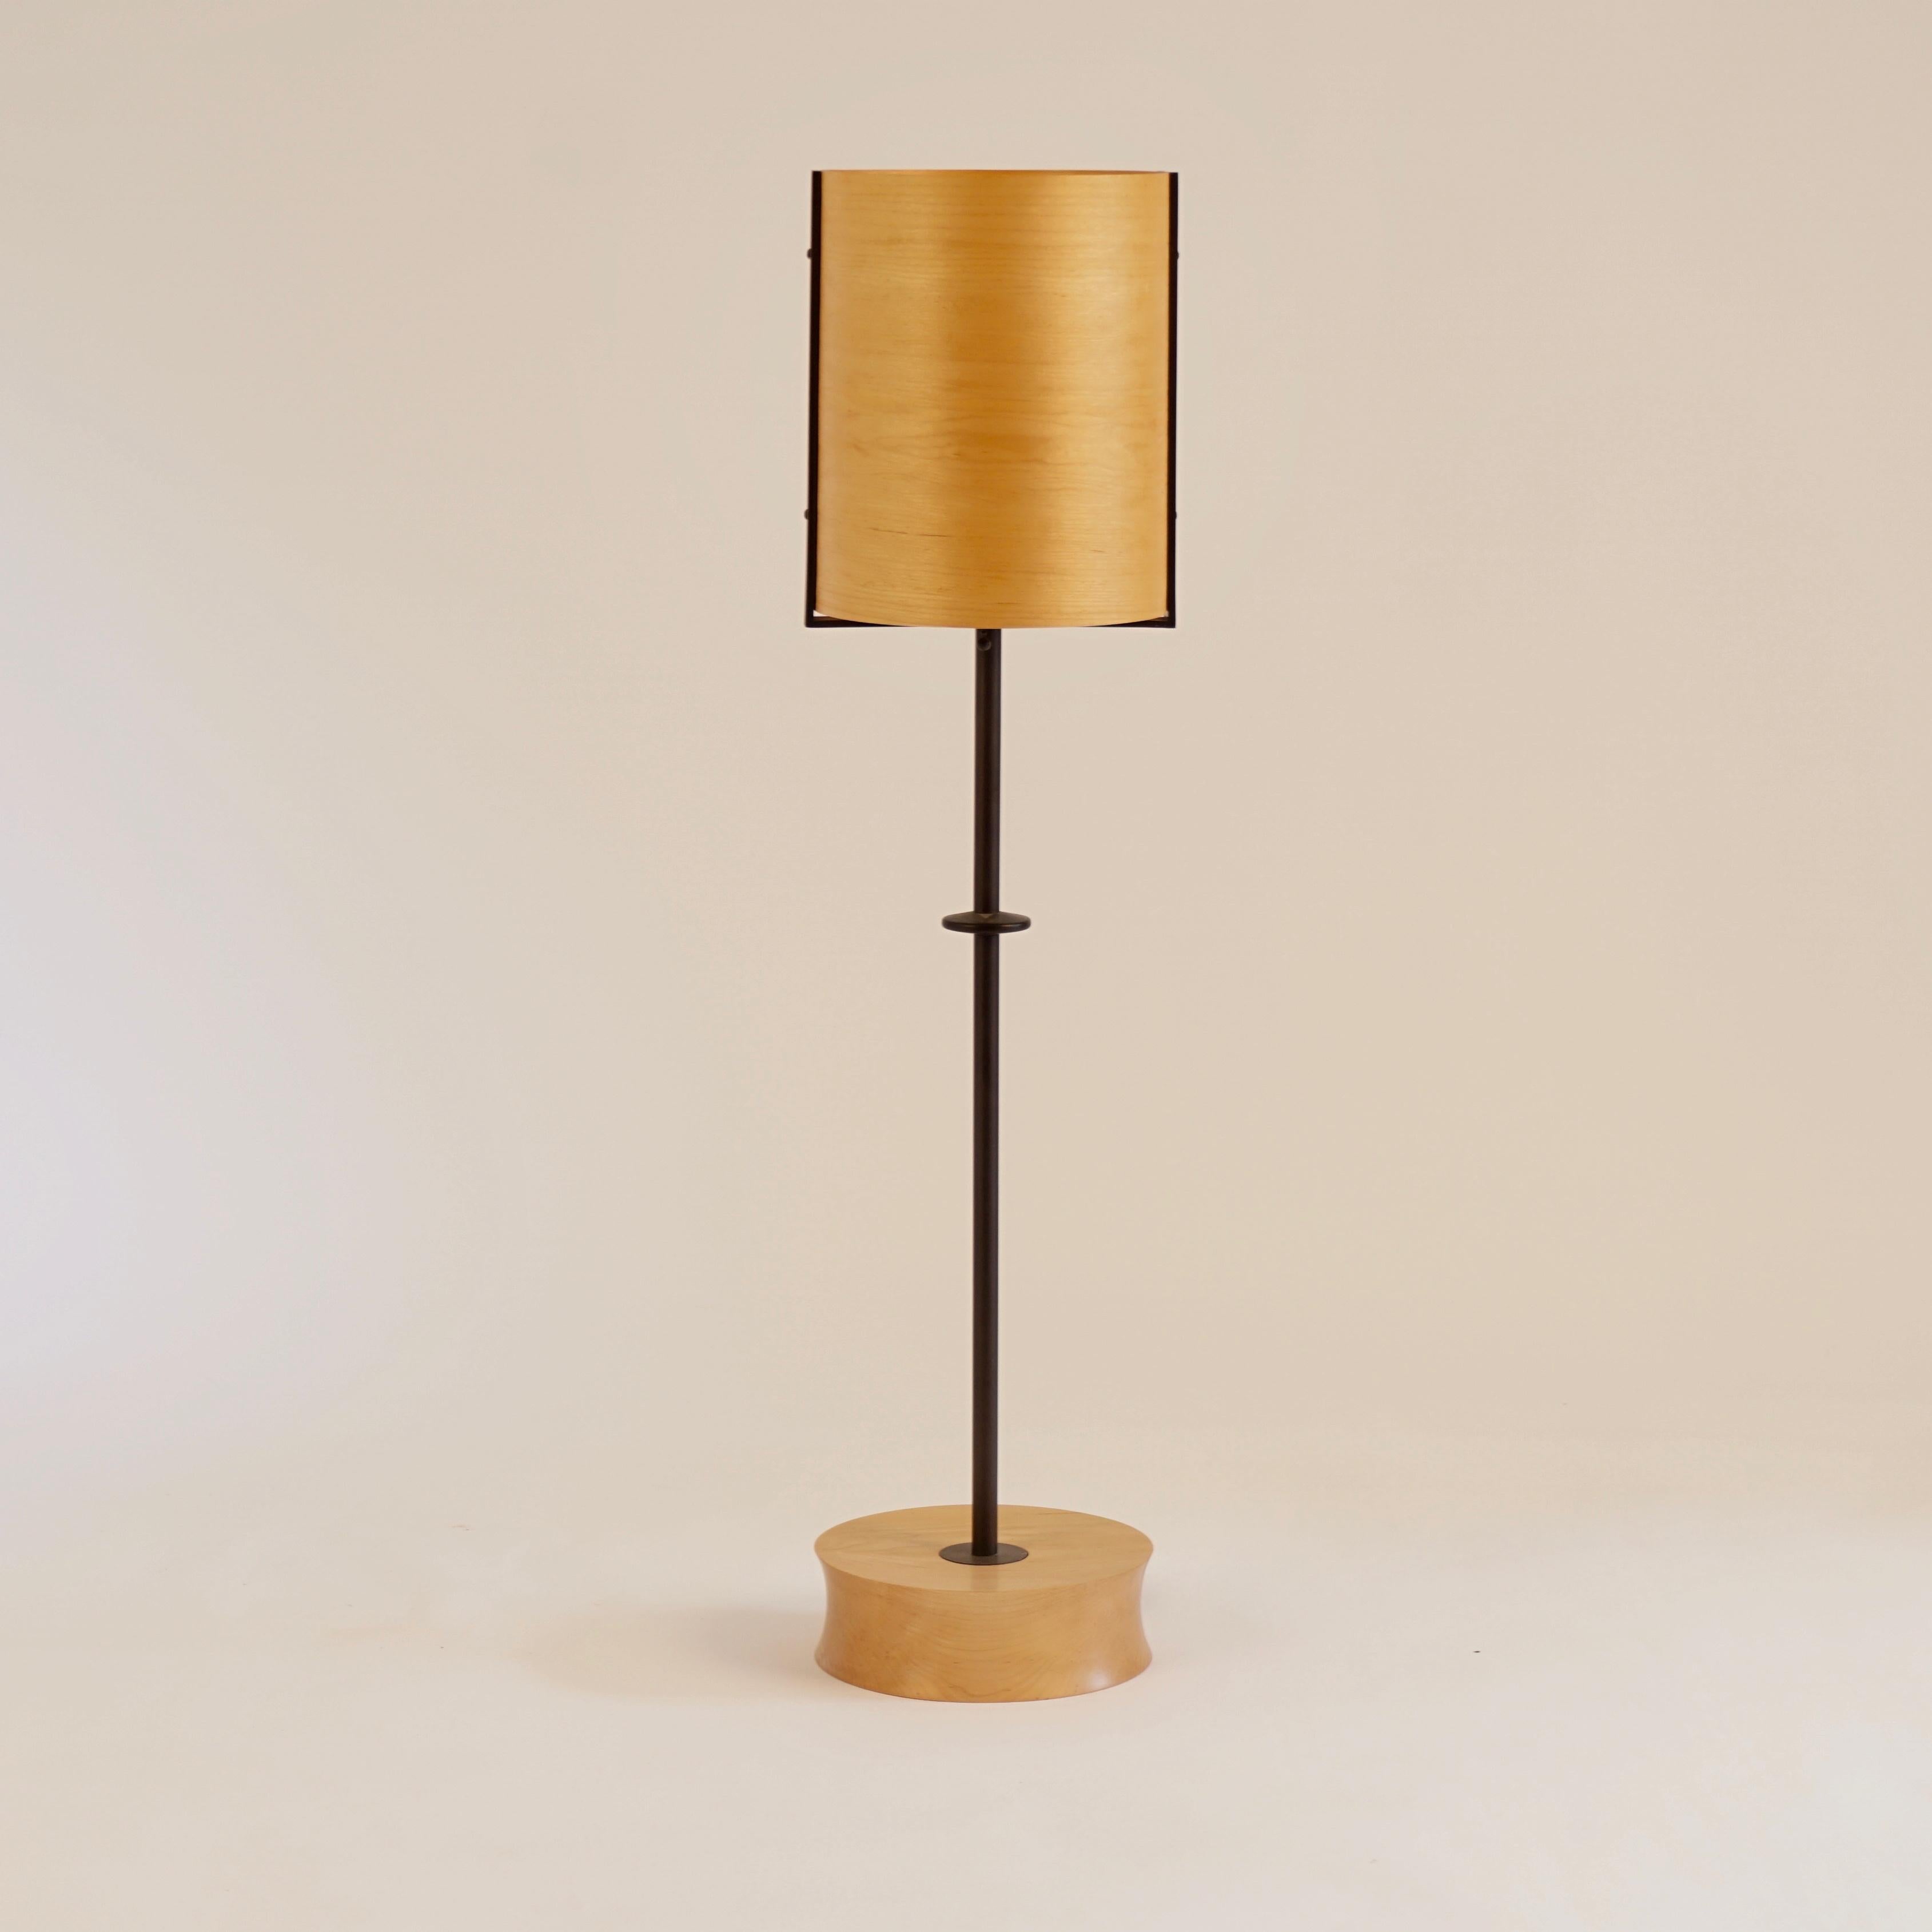 La lampe #6 en placage d'érable fait partie de la collection originale d'éclairage en placage de Lehrecke de 1998. L'idée est partie de la belle façon dont la lumière passait à travers de fins placages de bois, principalement des bois locaux. Le